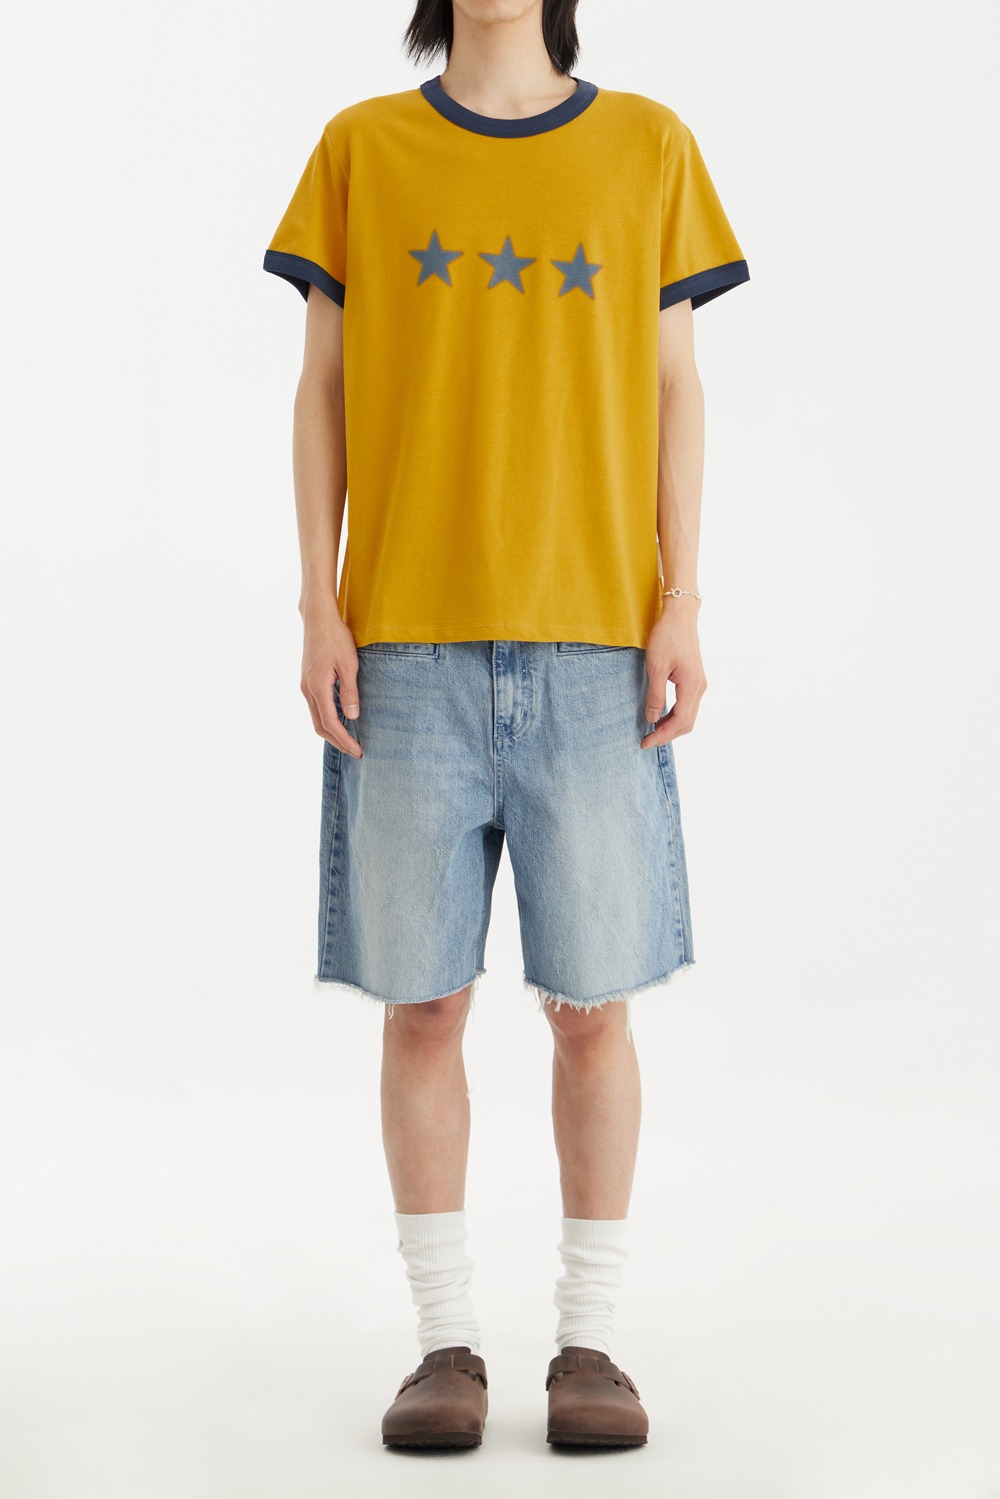 Star Ringer T-shirt-Mustard